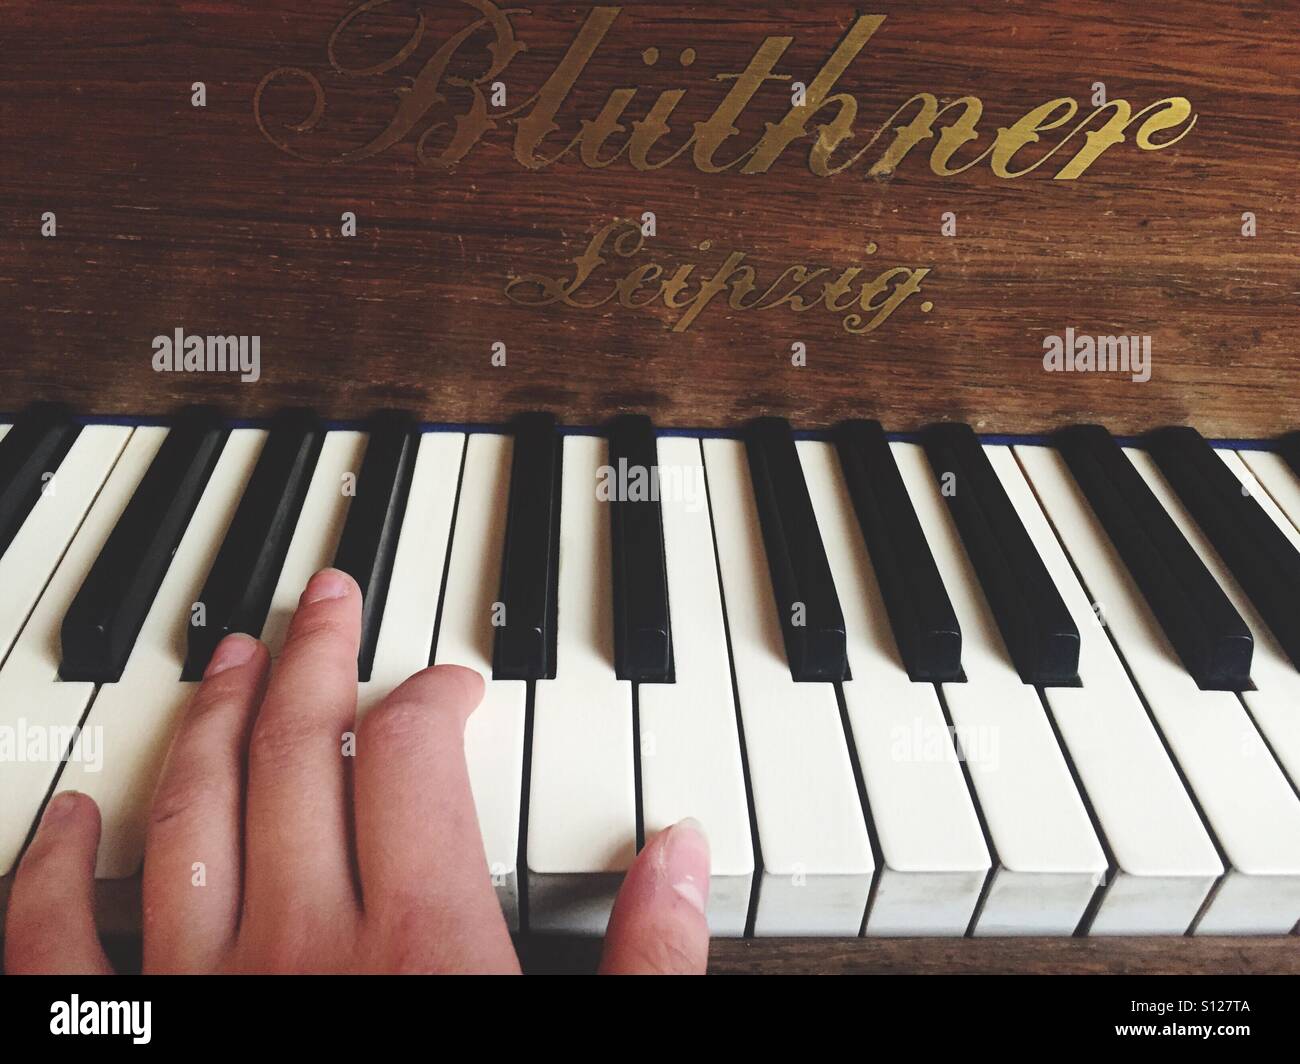 Hand on piano keys Stock Photo